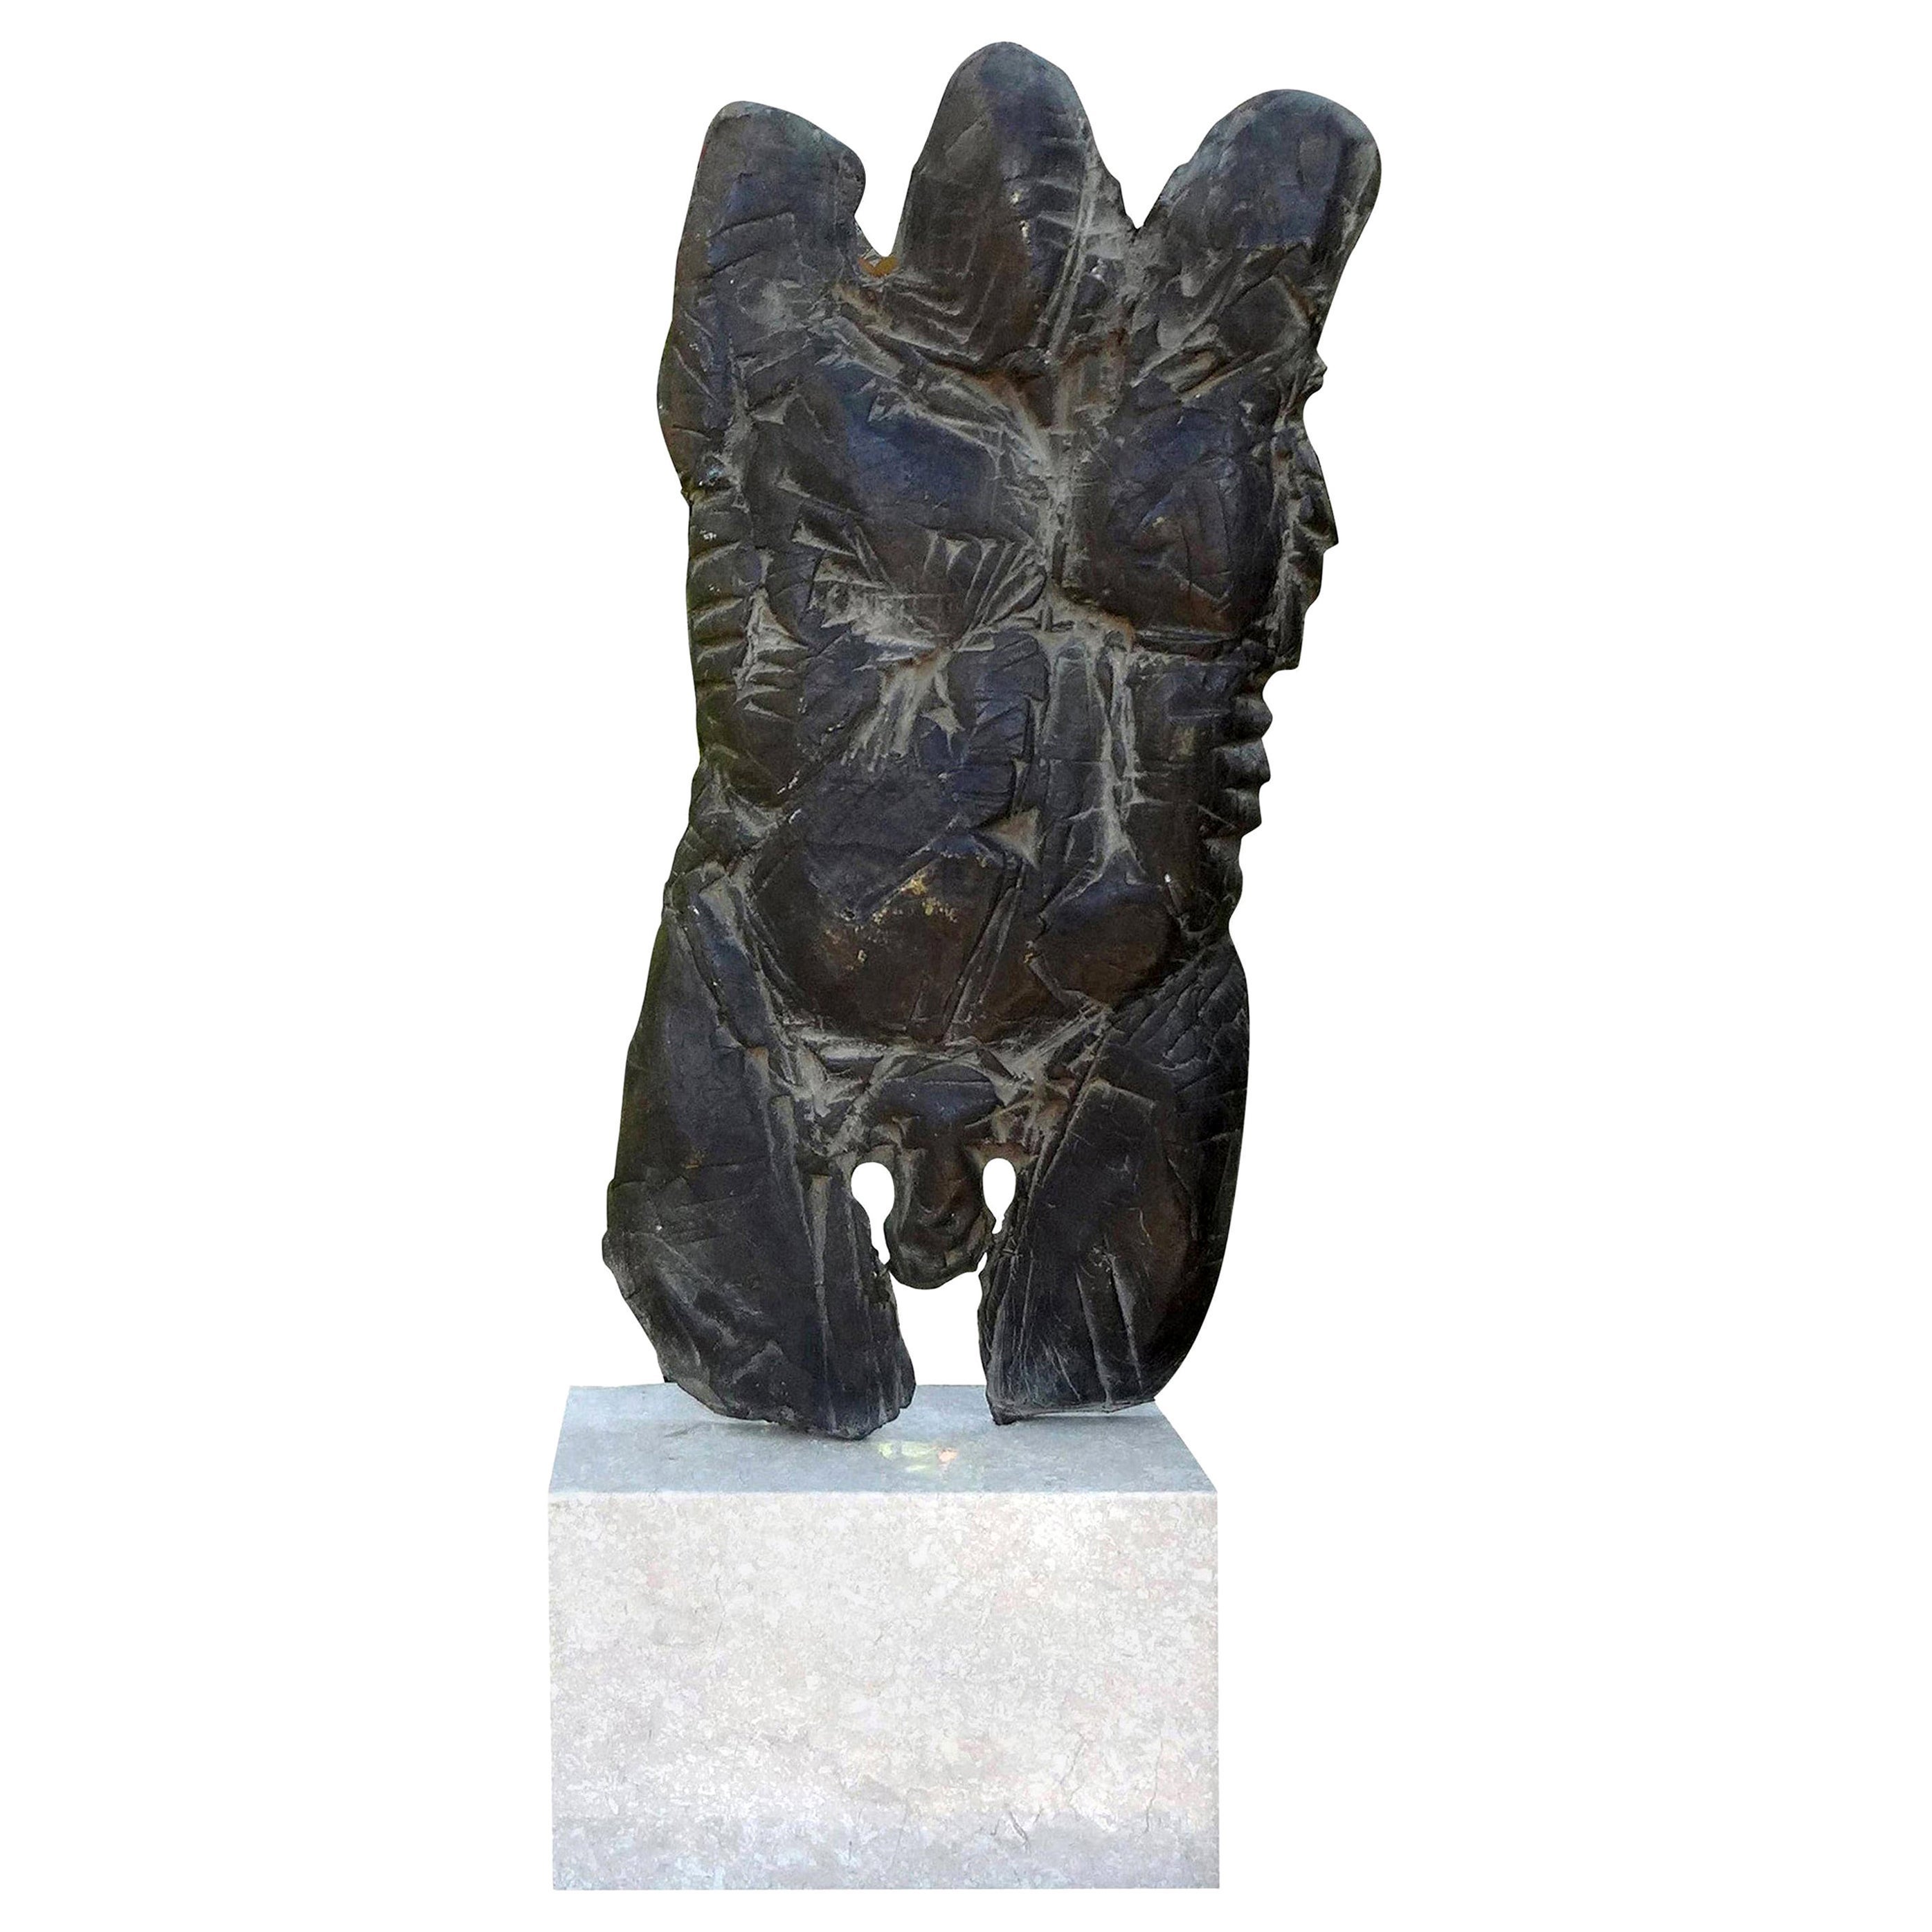 Abstrakte männliche Torso-Bronze-Skulptur auf Marmorsockel, von Giacometti inspiriert